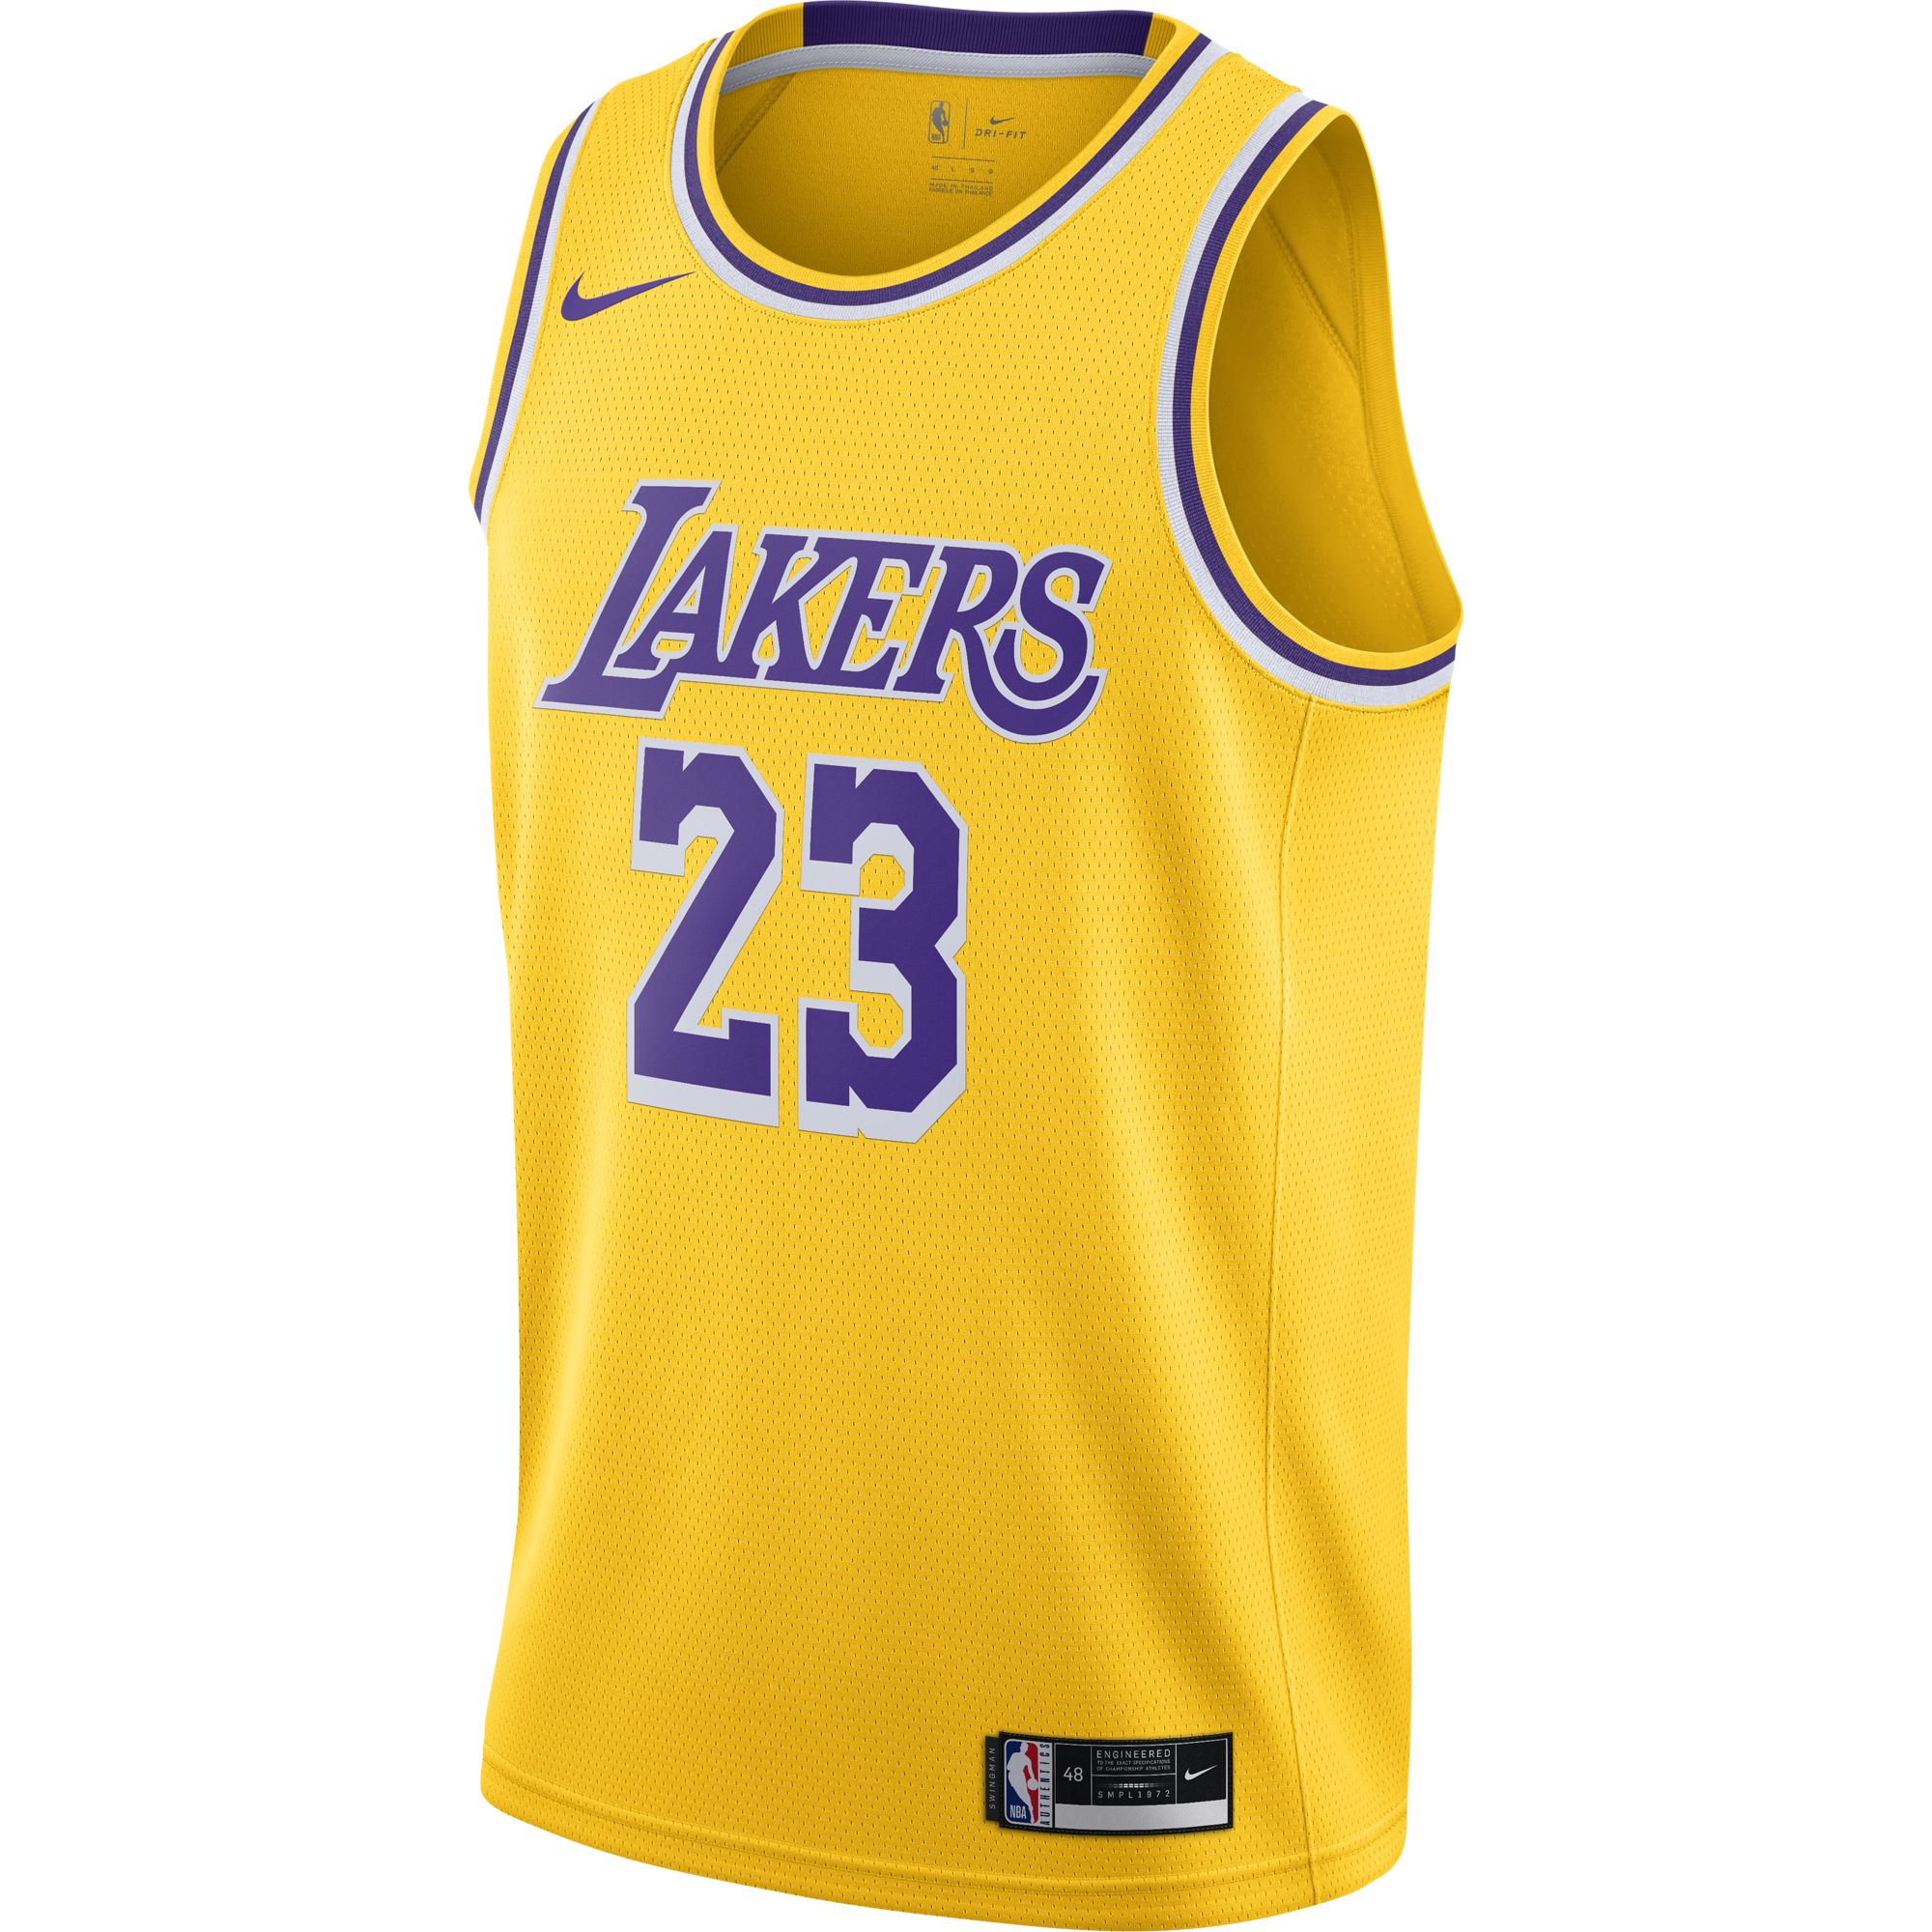 Джерси Nike LeBron James Lakers Icon Edition 2020 - картинка